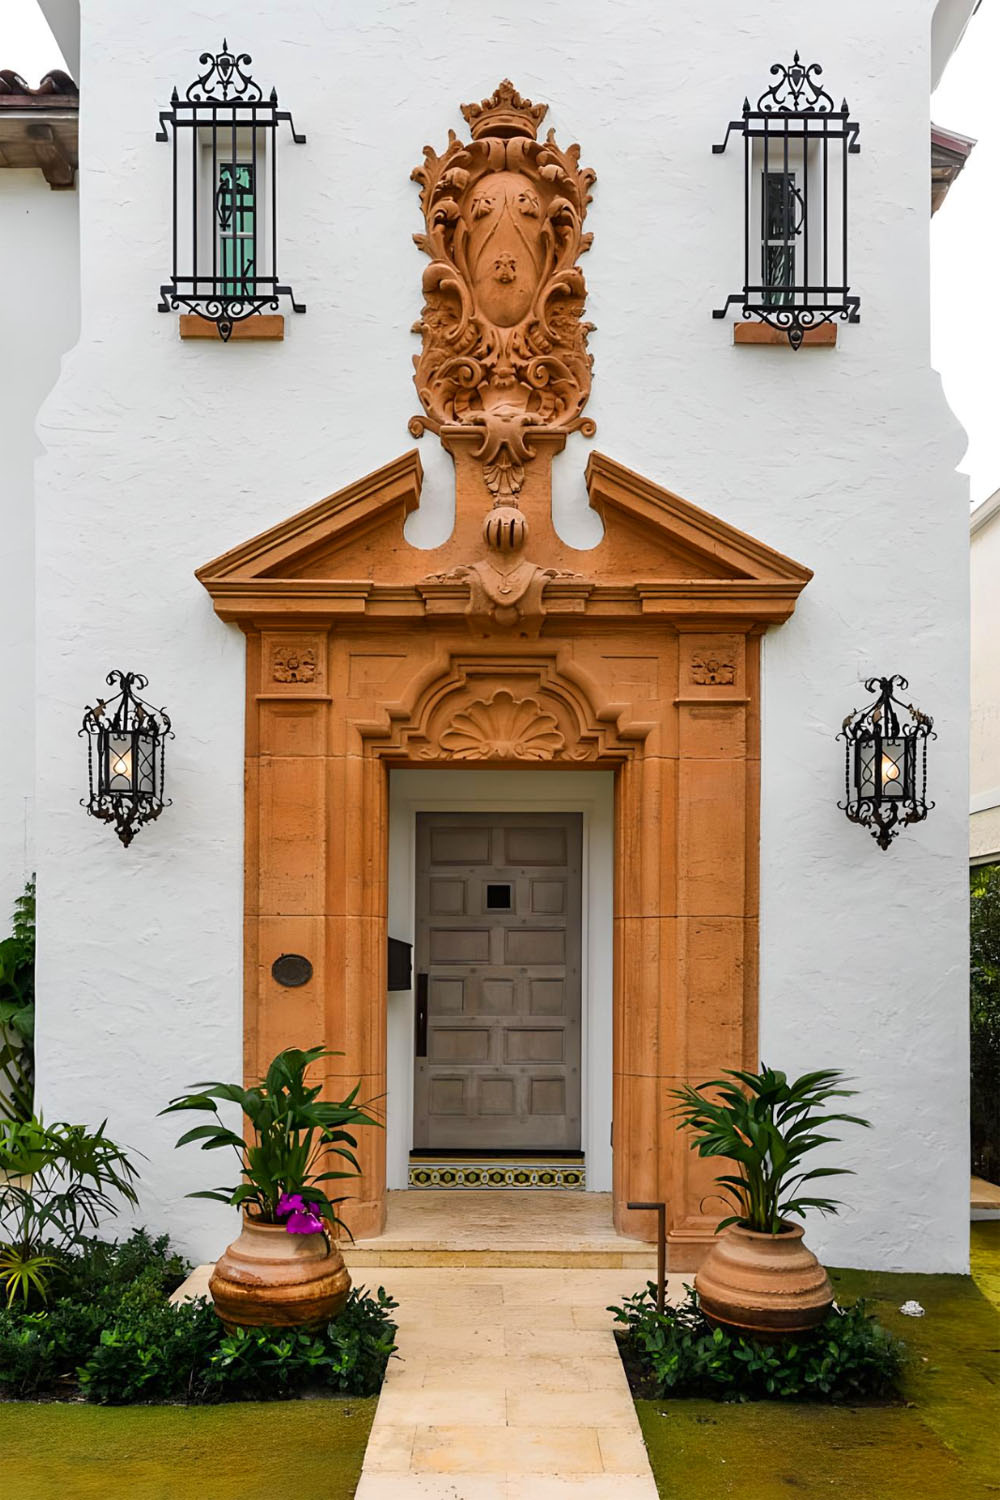 Elaborate Mediterranean Revival Cast-Stone Door Surround